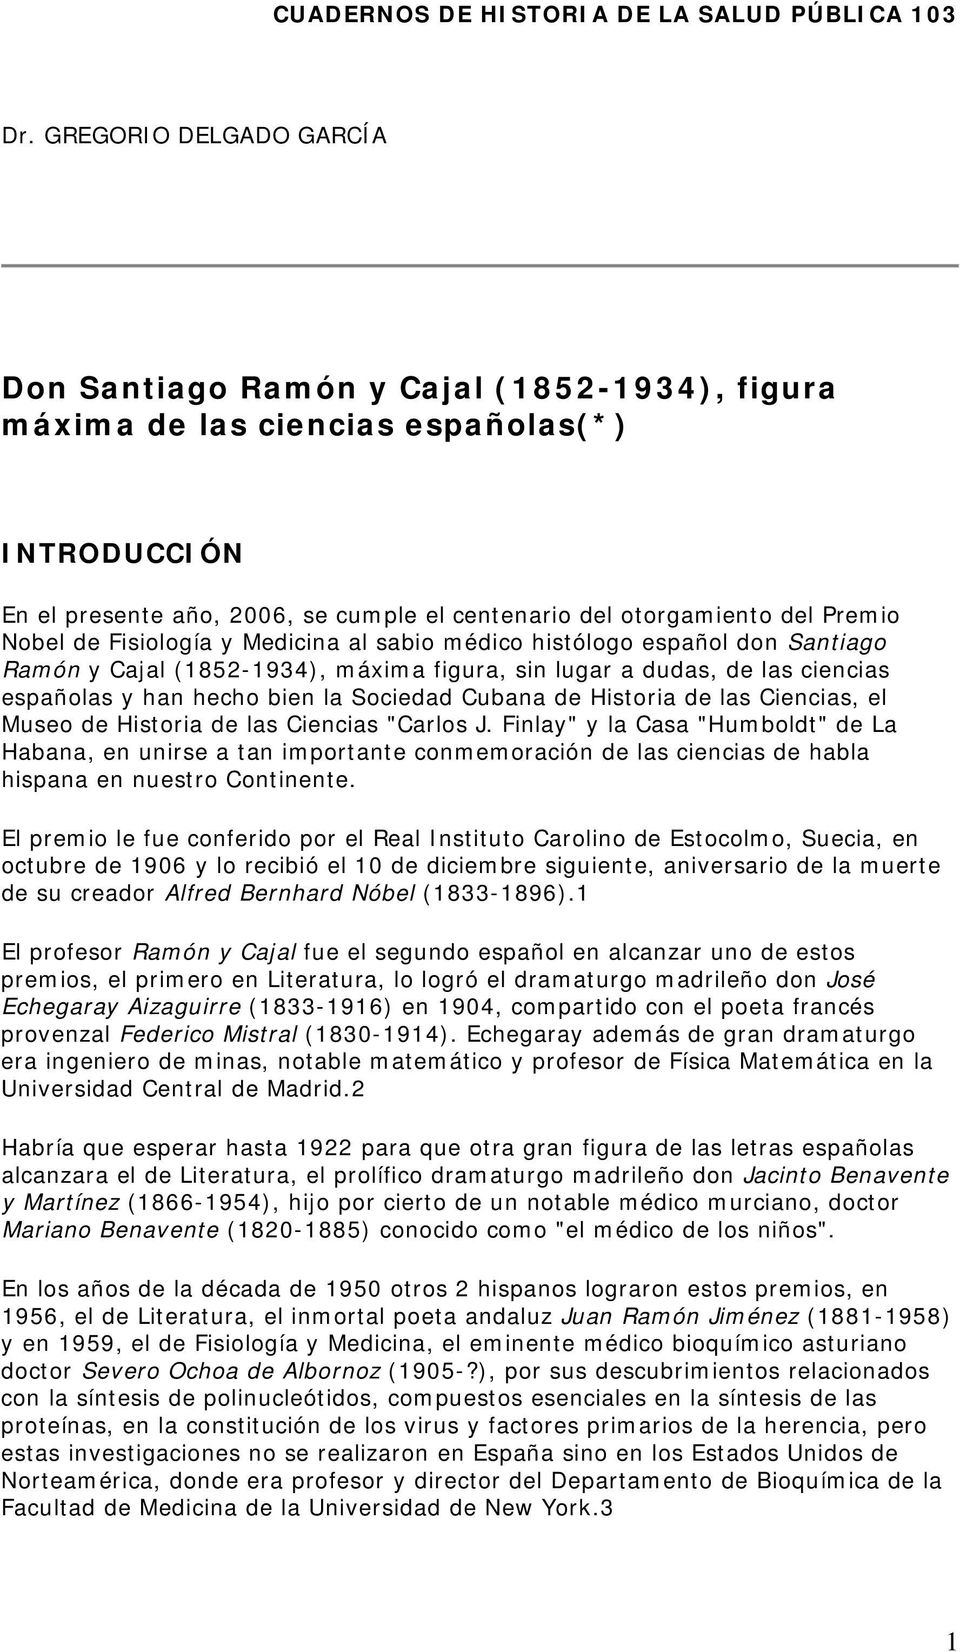 Nobel de Fisiología y Medicina al sabio médico histólogo español don Santiago Ramón y Cajal (1852-1934), máxima figura, sin lugar a dudas, de las ciencias españolas y han hecho bien la Sociedad